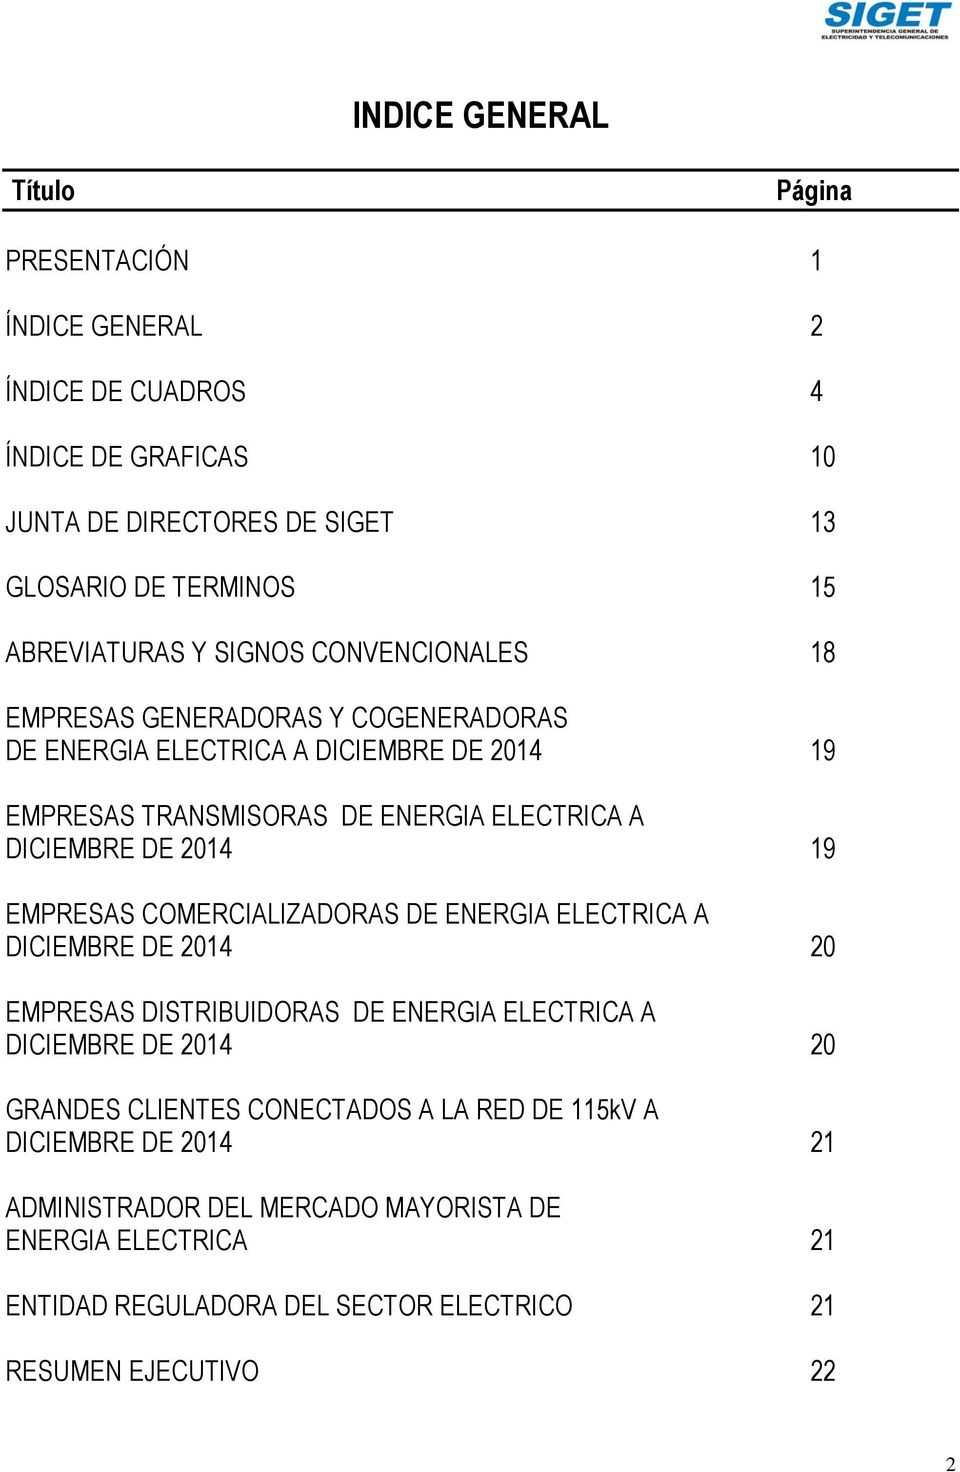 DICIEMBRE DE 2014 19 EMPRESAS COMERCIALIZADORAS DE ENERGIA ELECTRICA A DICIEMBRE DE 2014 20 EMPRESAS DISTRIBUIDORAS DE ENERGIA ELECTRICA A DICIEMBRE DE 2014 20 GRANDES